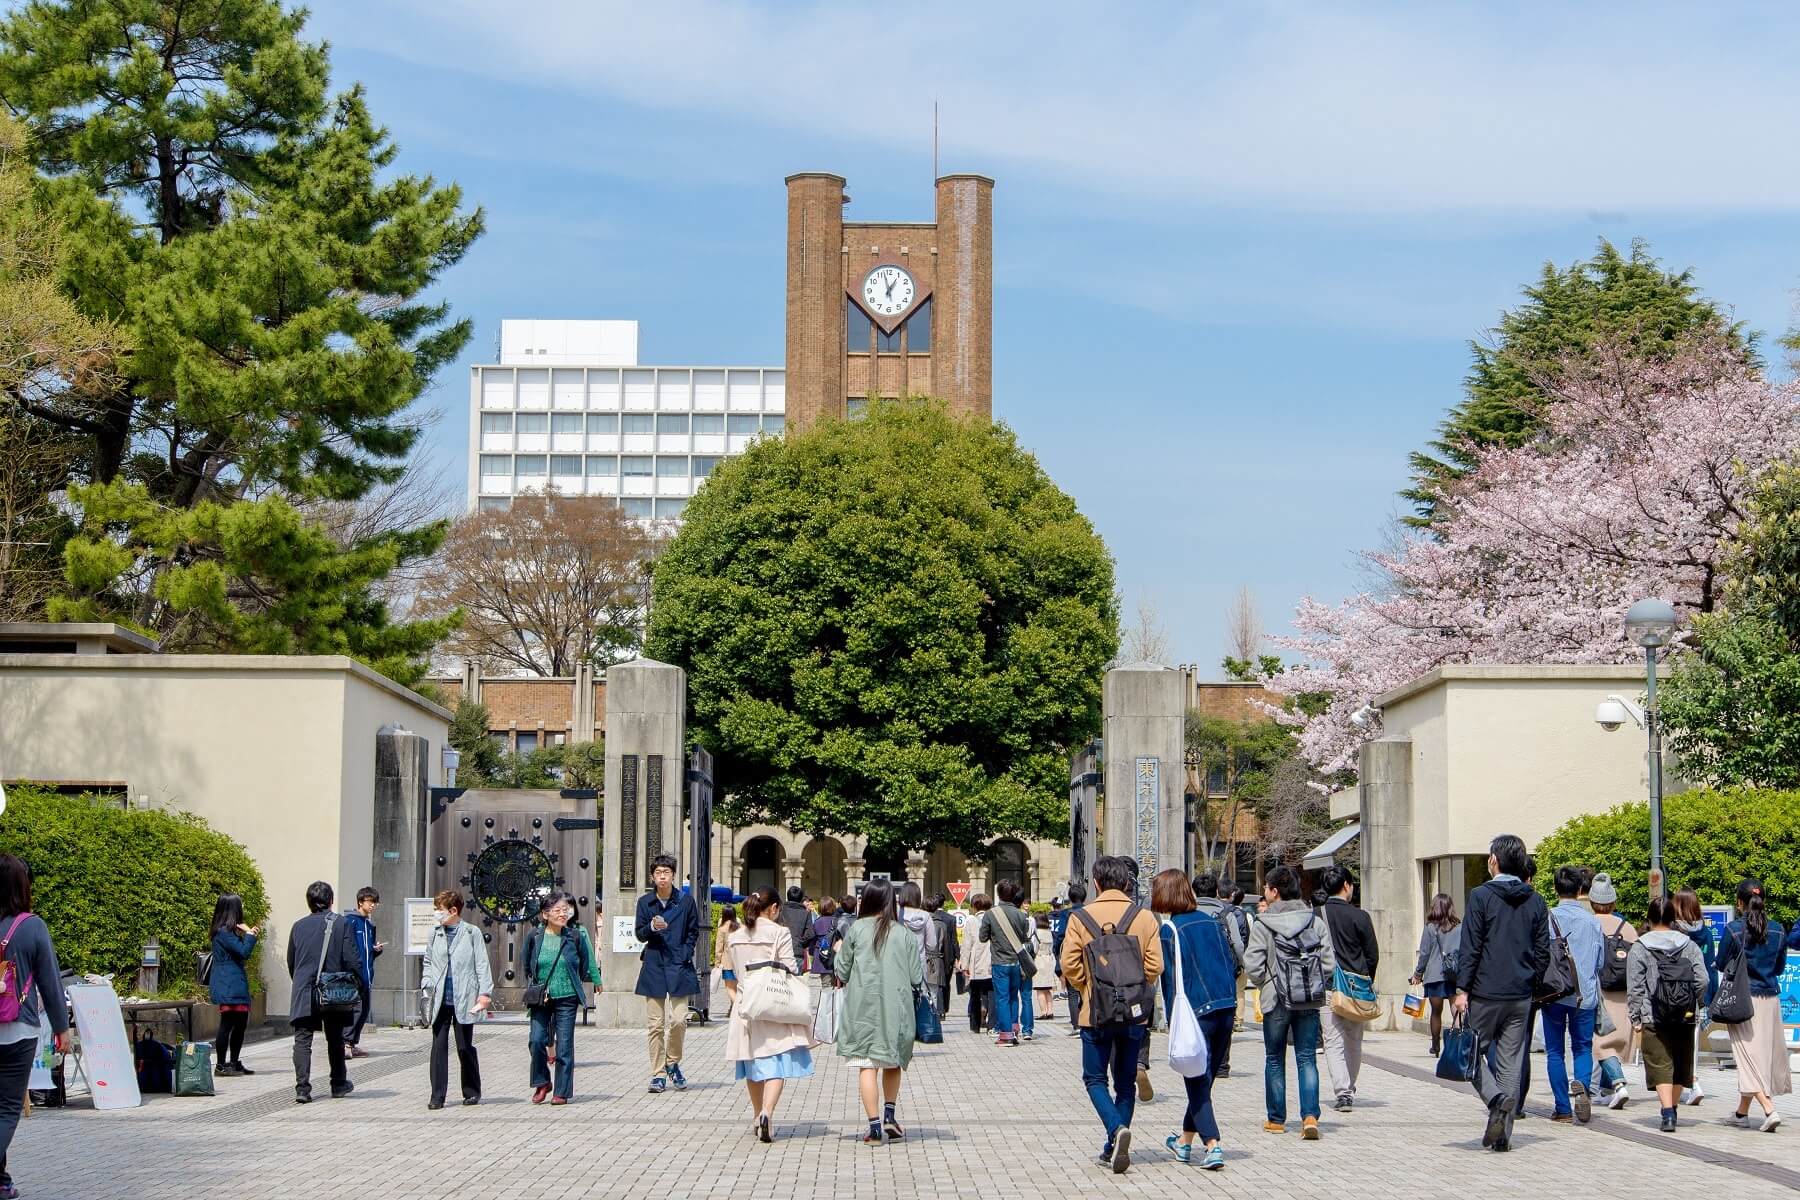 Etudiants se rendant à l'Université de Tokyo, Japon